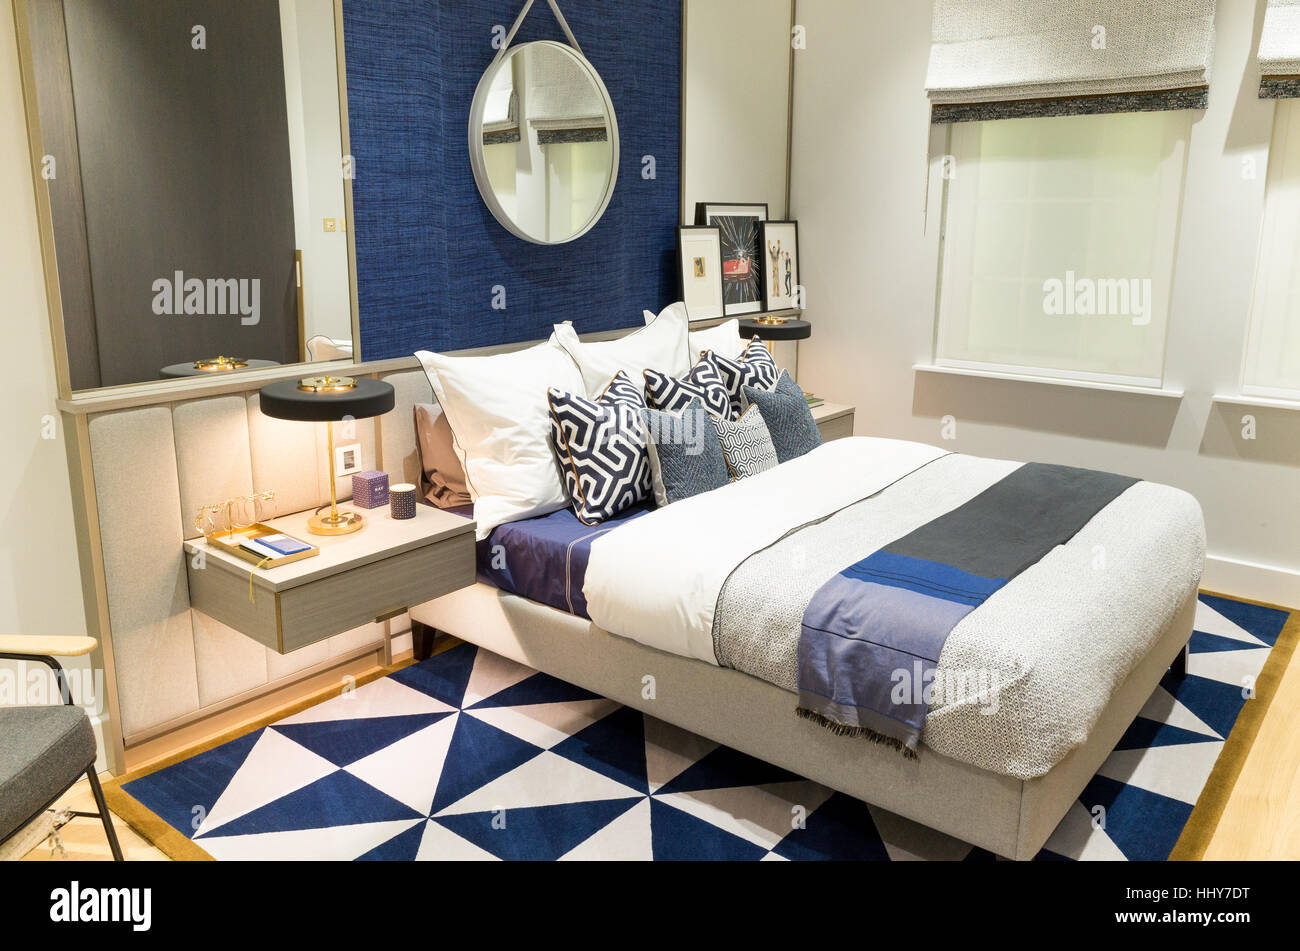 Dans la chambre à coucher appartement showroom marketing suite d'un nouveau développement immobilier, England, UK Banque D'Images